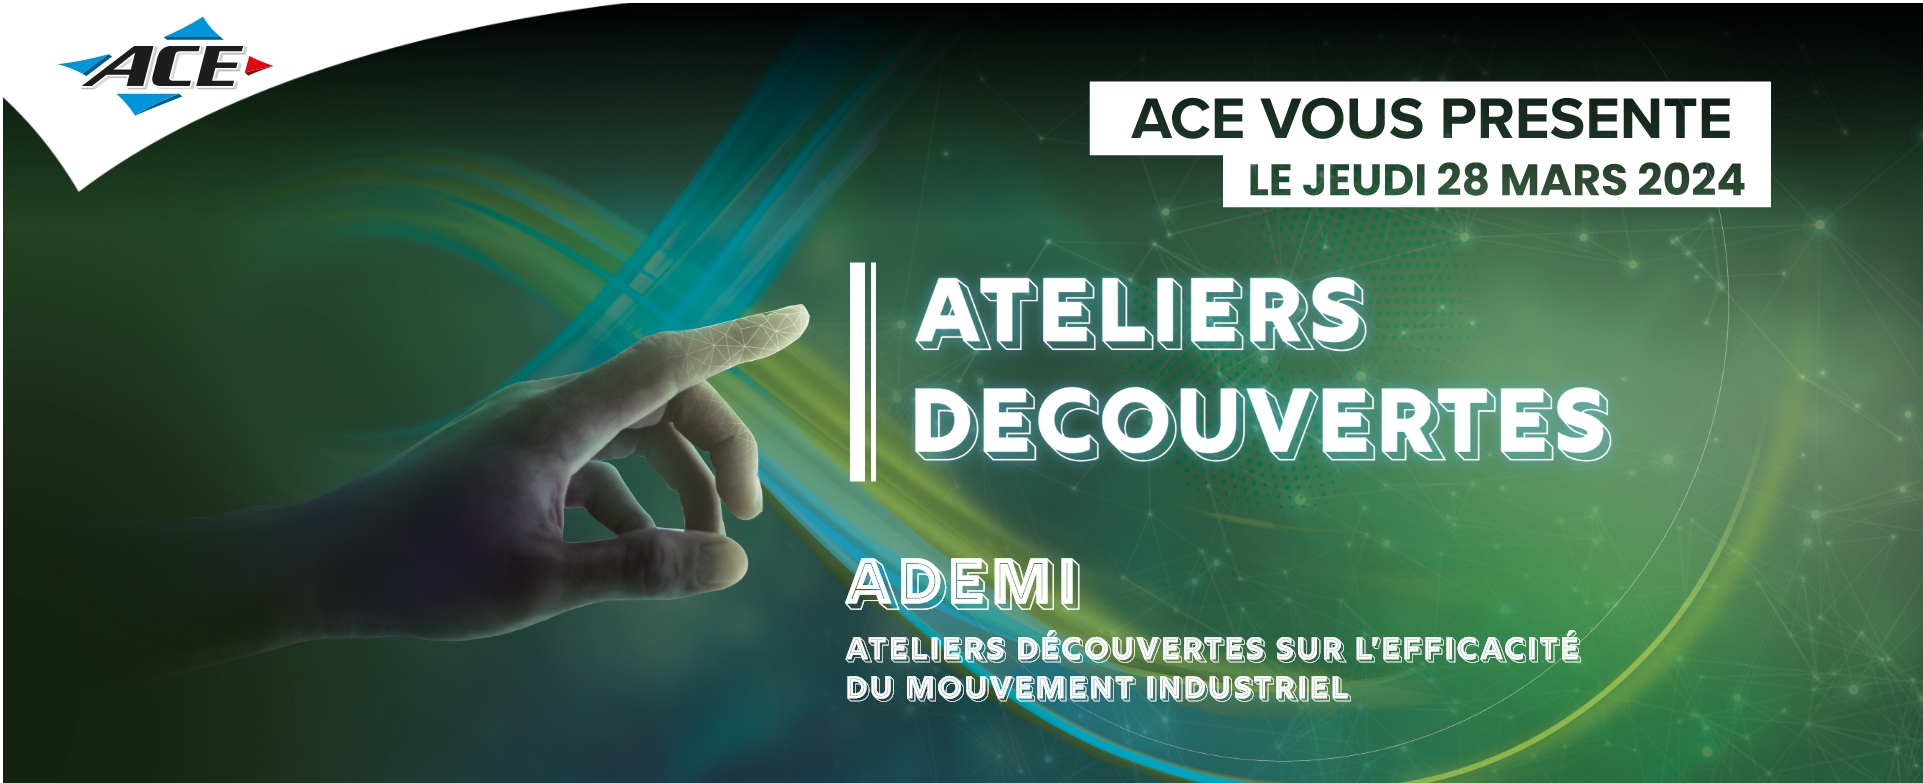 ACE - Webinar - Ateliers découvertes - ADEMI - Le 28 mars 2024